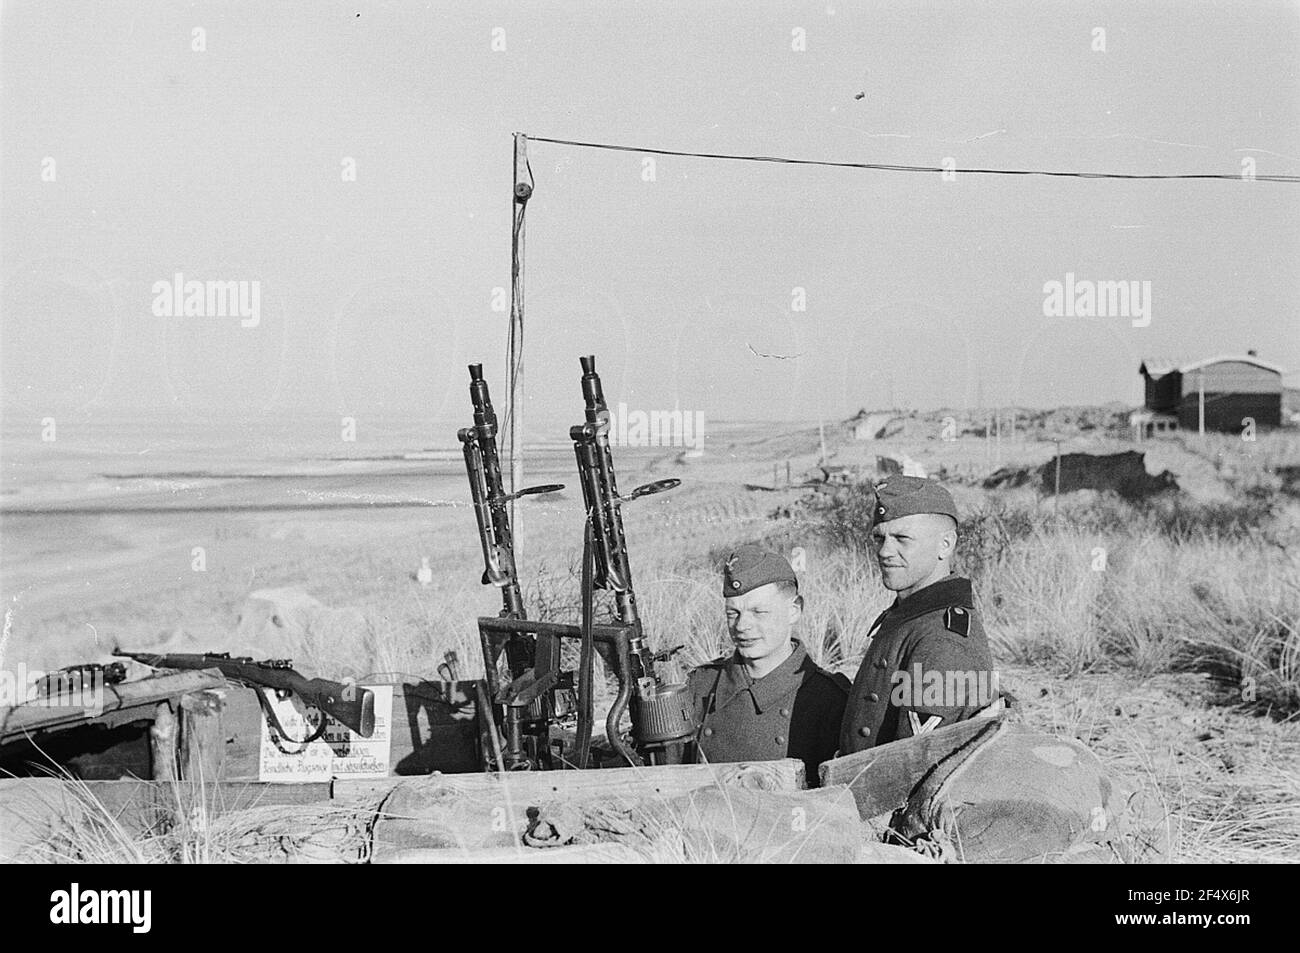 Deuxième Guerre mondiale. Pays-Bas sous équipage allemand. Deux parents de la Wehrmacht allemande à une double sockétafette 36 avec MG 34 et carabiner 98k dans une tranchée dans les dunes de la mer du Nord (probablement à la Haye) Banque D'Images